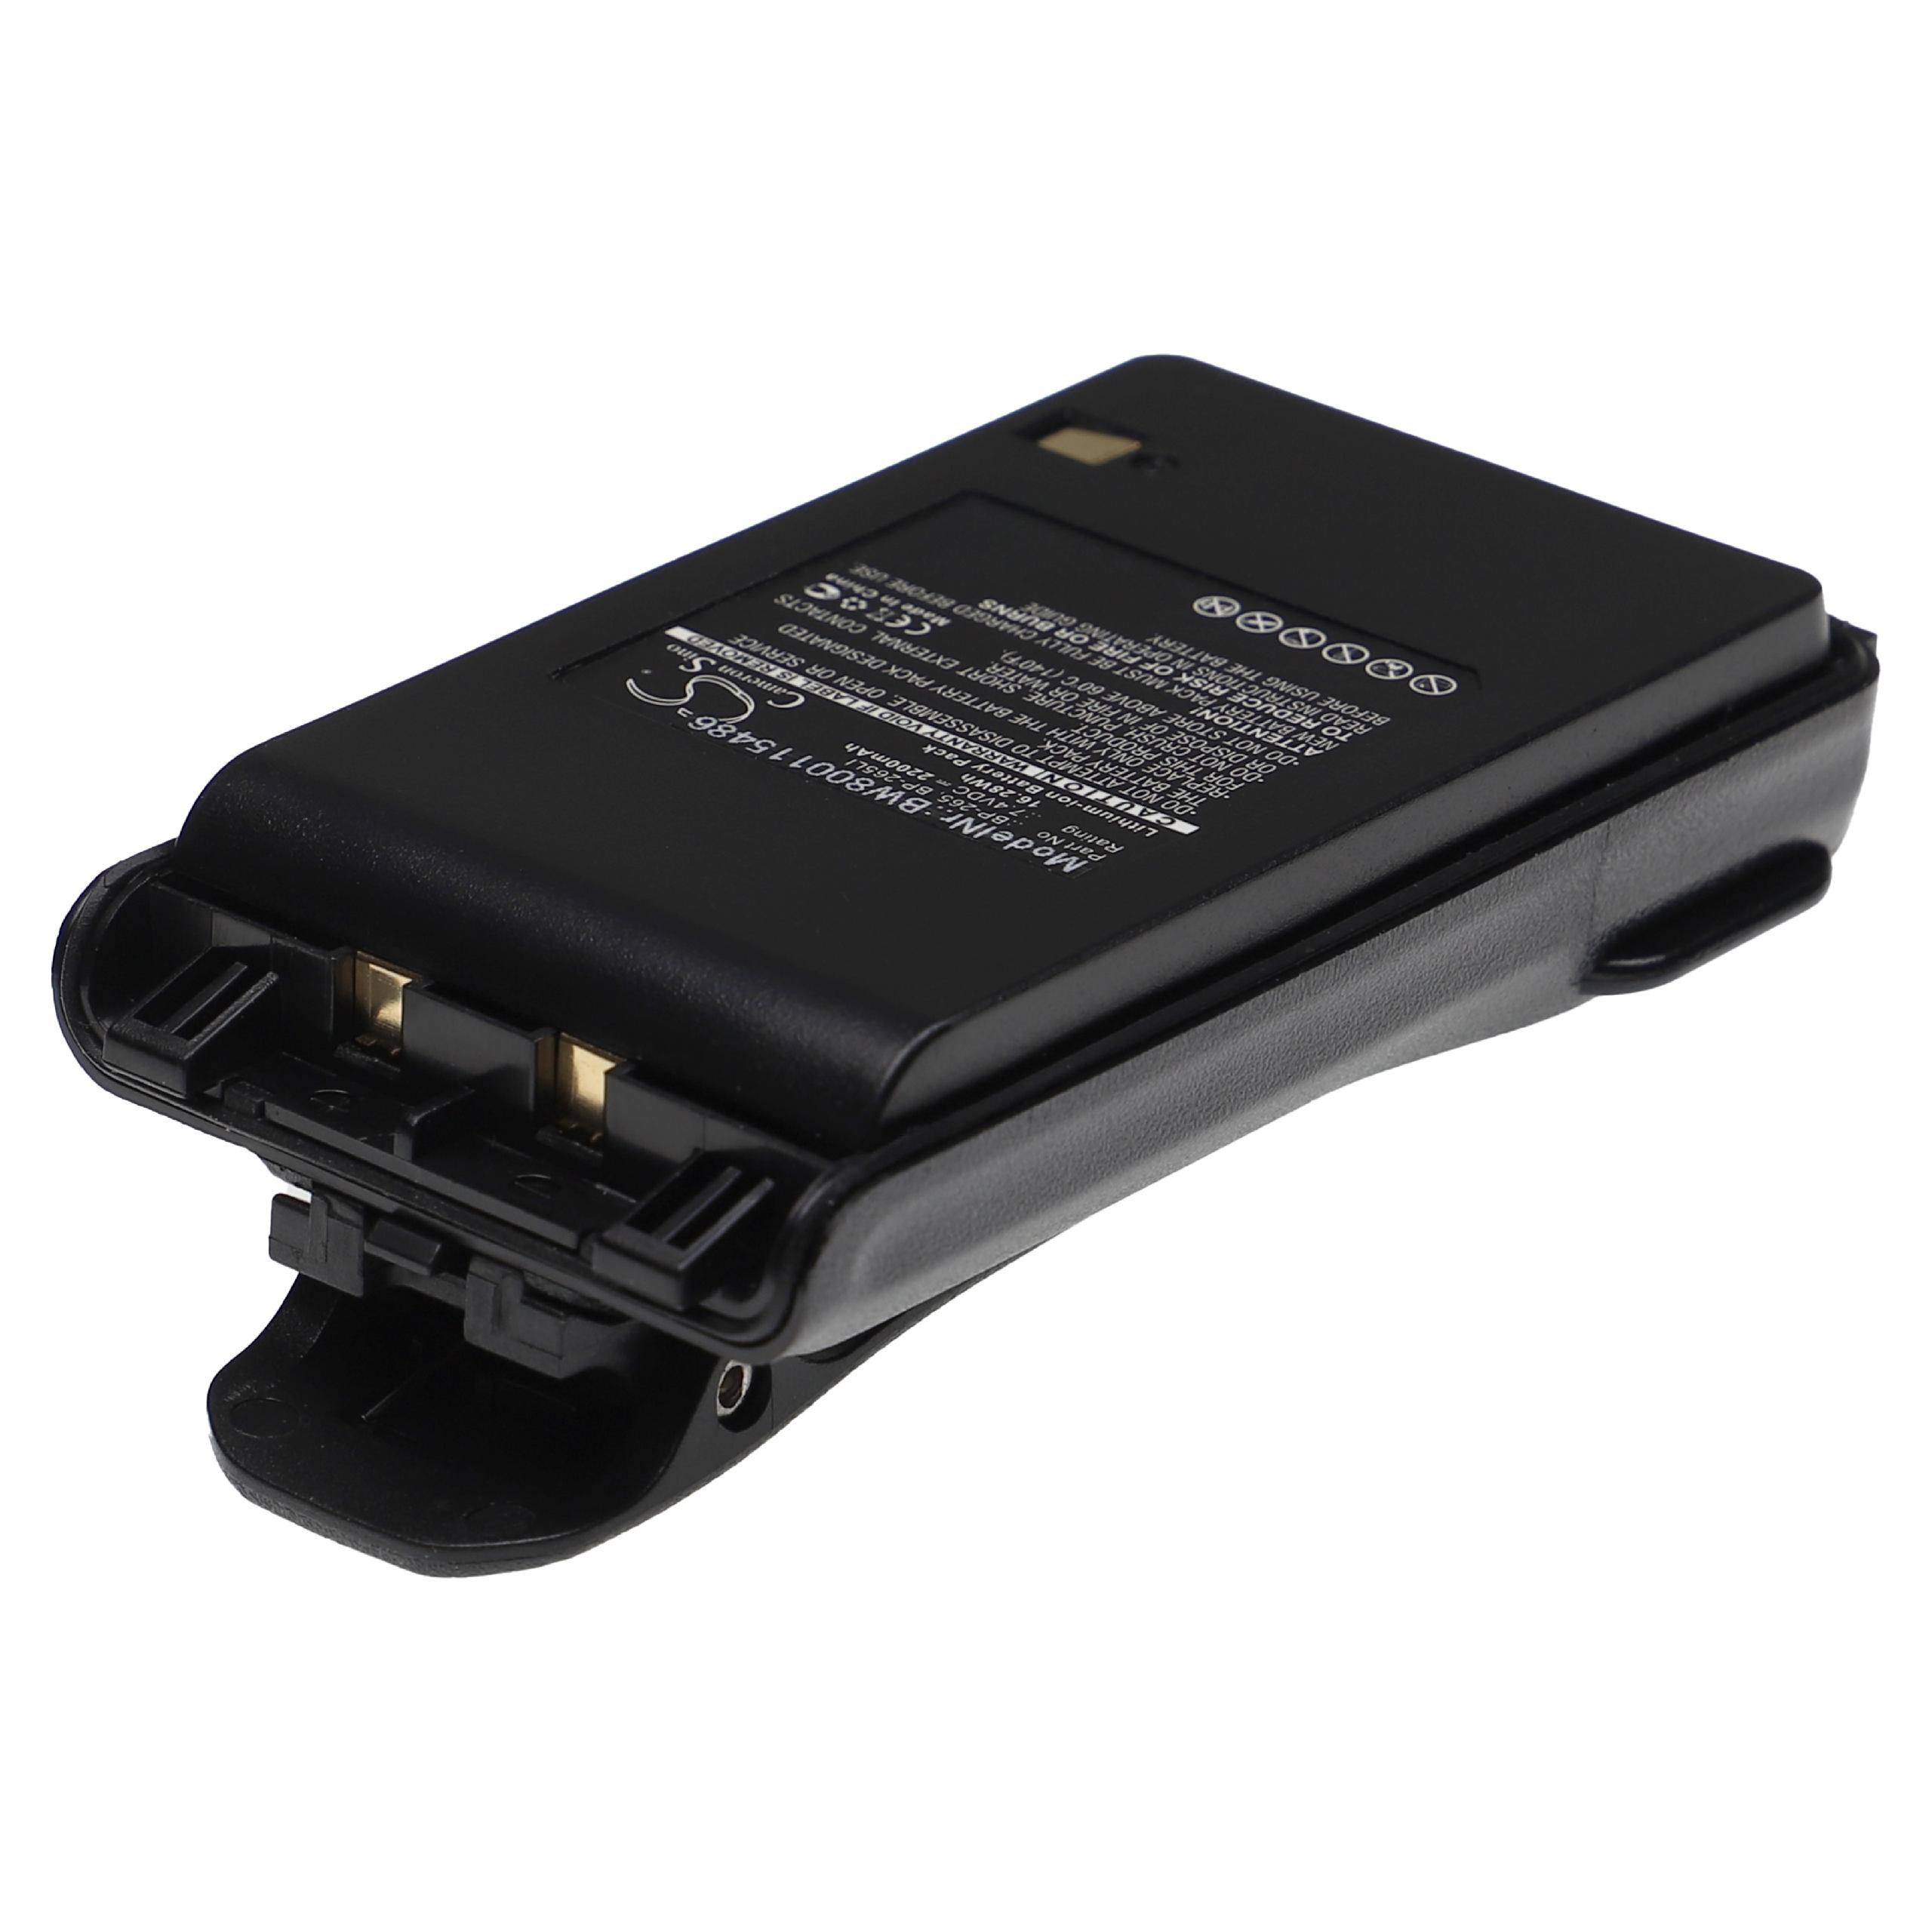 Akumulator do radiotelefonu zamiennik Icom BP-265LI, BP-265 - 2200 mAh 7,4 V Li-Ion + klips na pasek